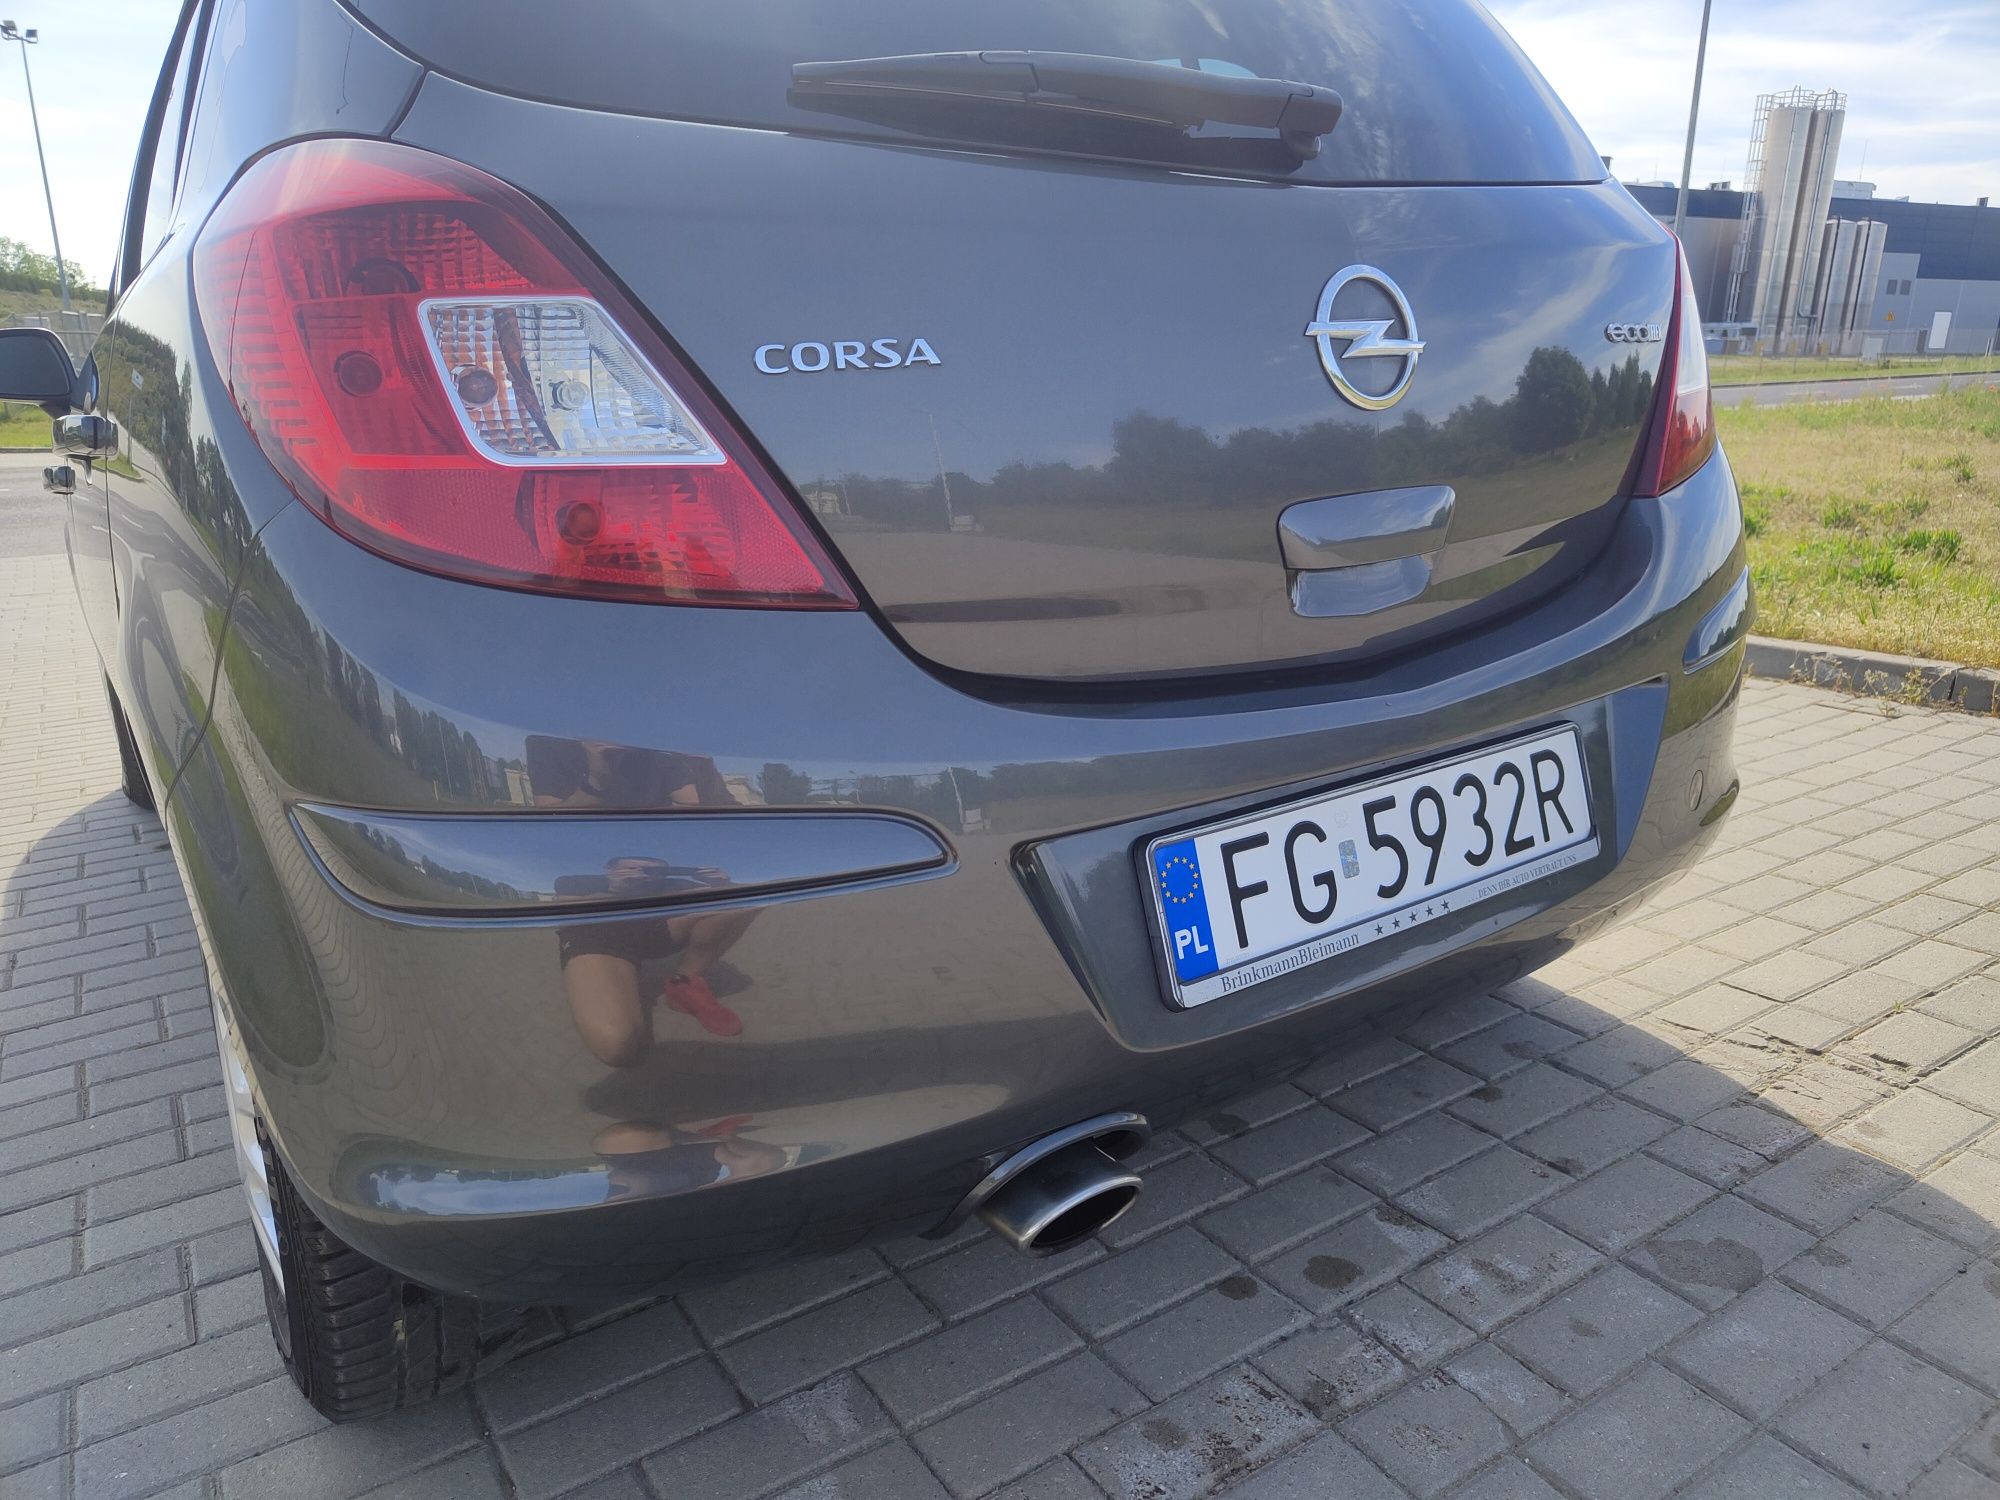 PEDANTYCZNIE zadbana, 2011 Polift 5 drzwi, 1,2 benzyna Opel Corsa D